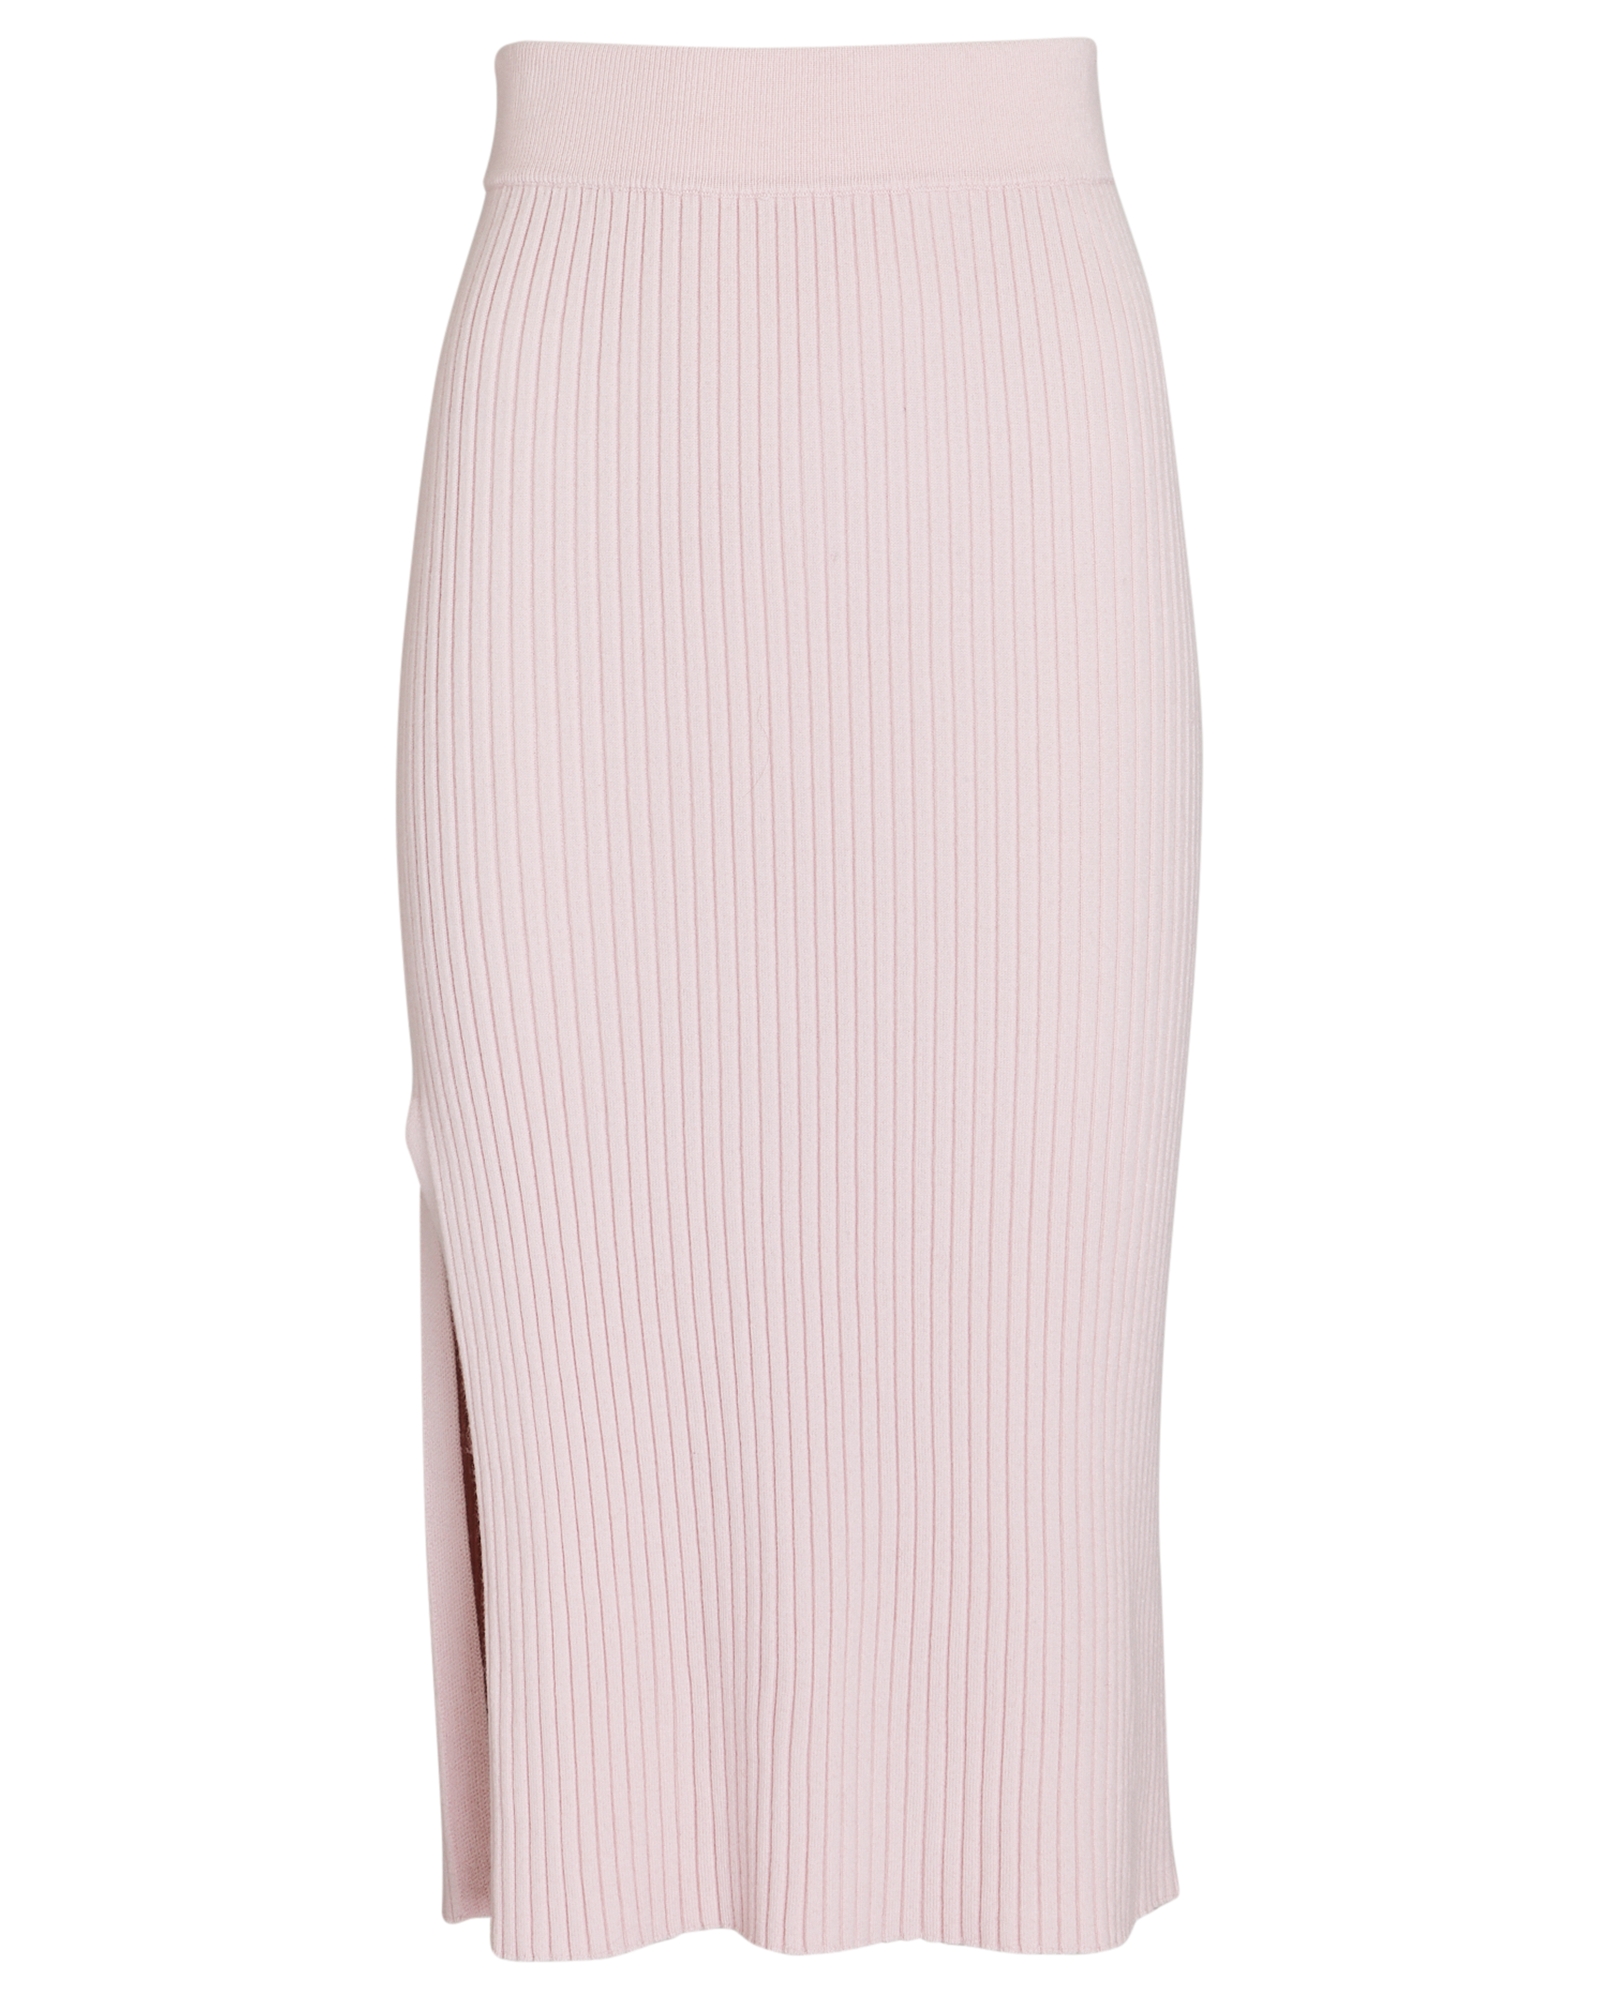 SABLYN Debs Cashmere Rib Knit Midi Skirt | INTERMIX®